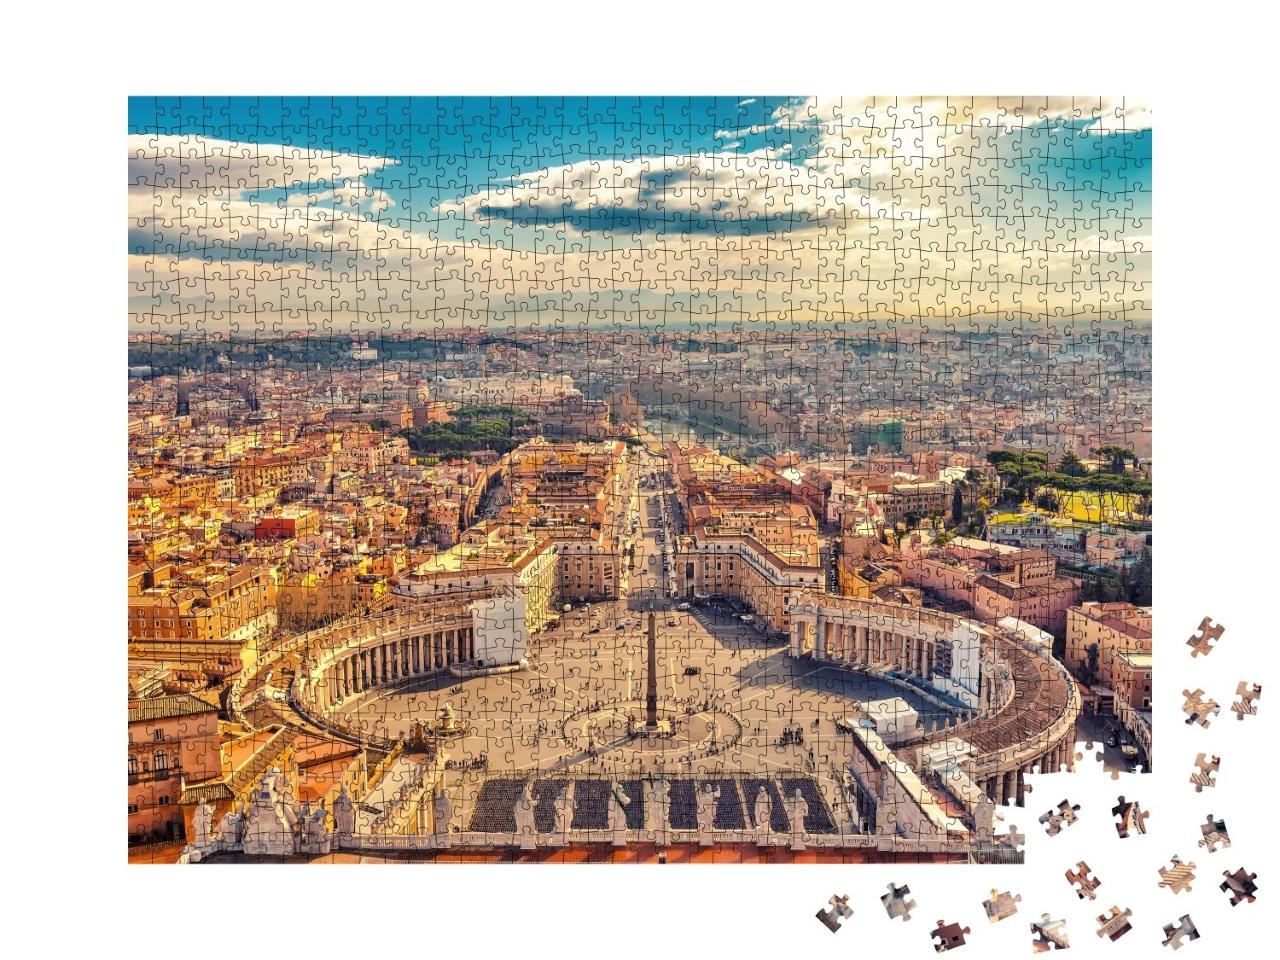 Puzzle 1000 Teile „Petersplatz im Vatikan, Rom“